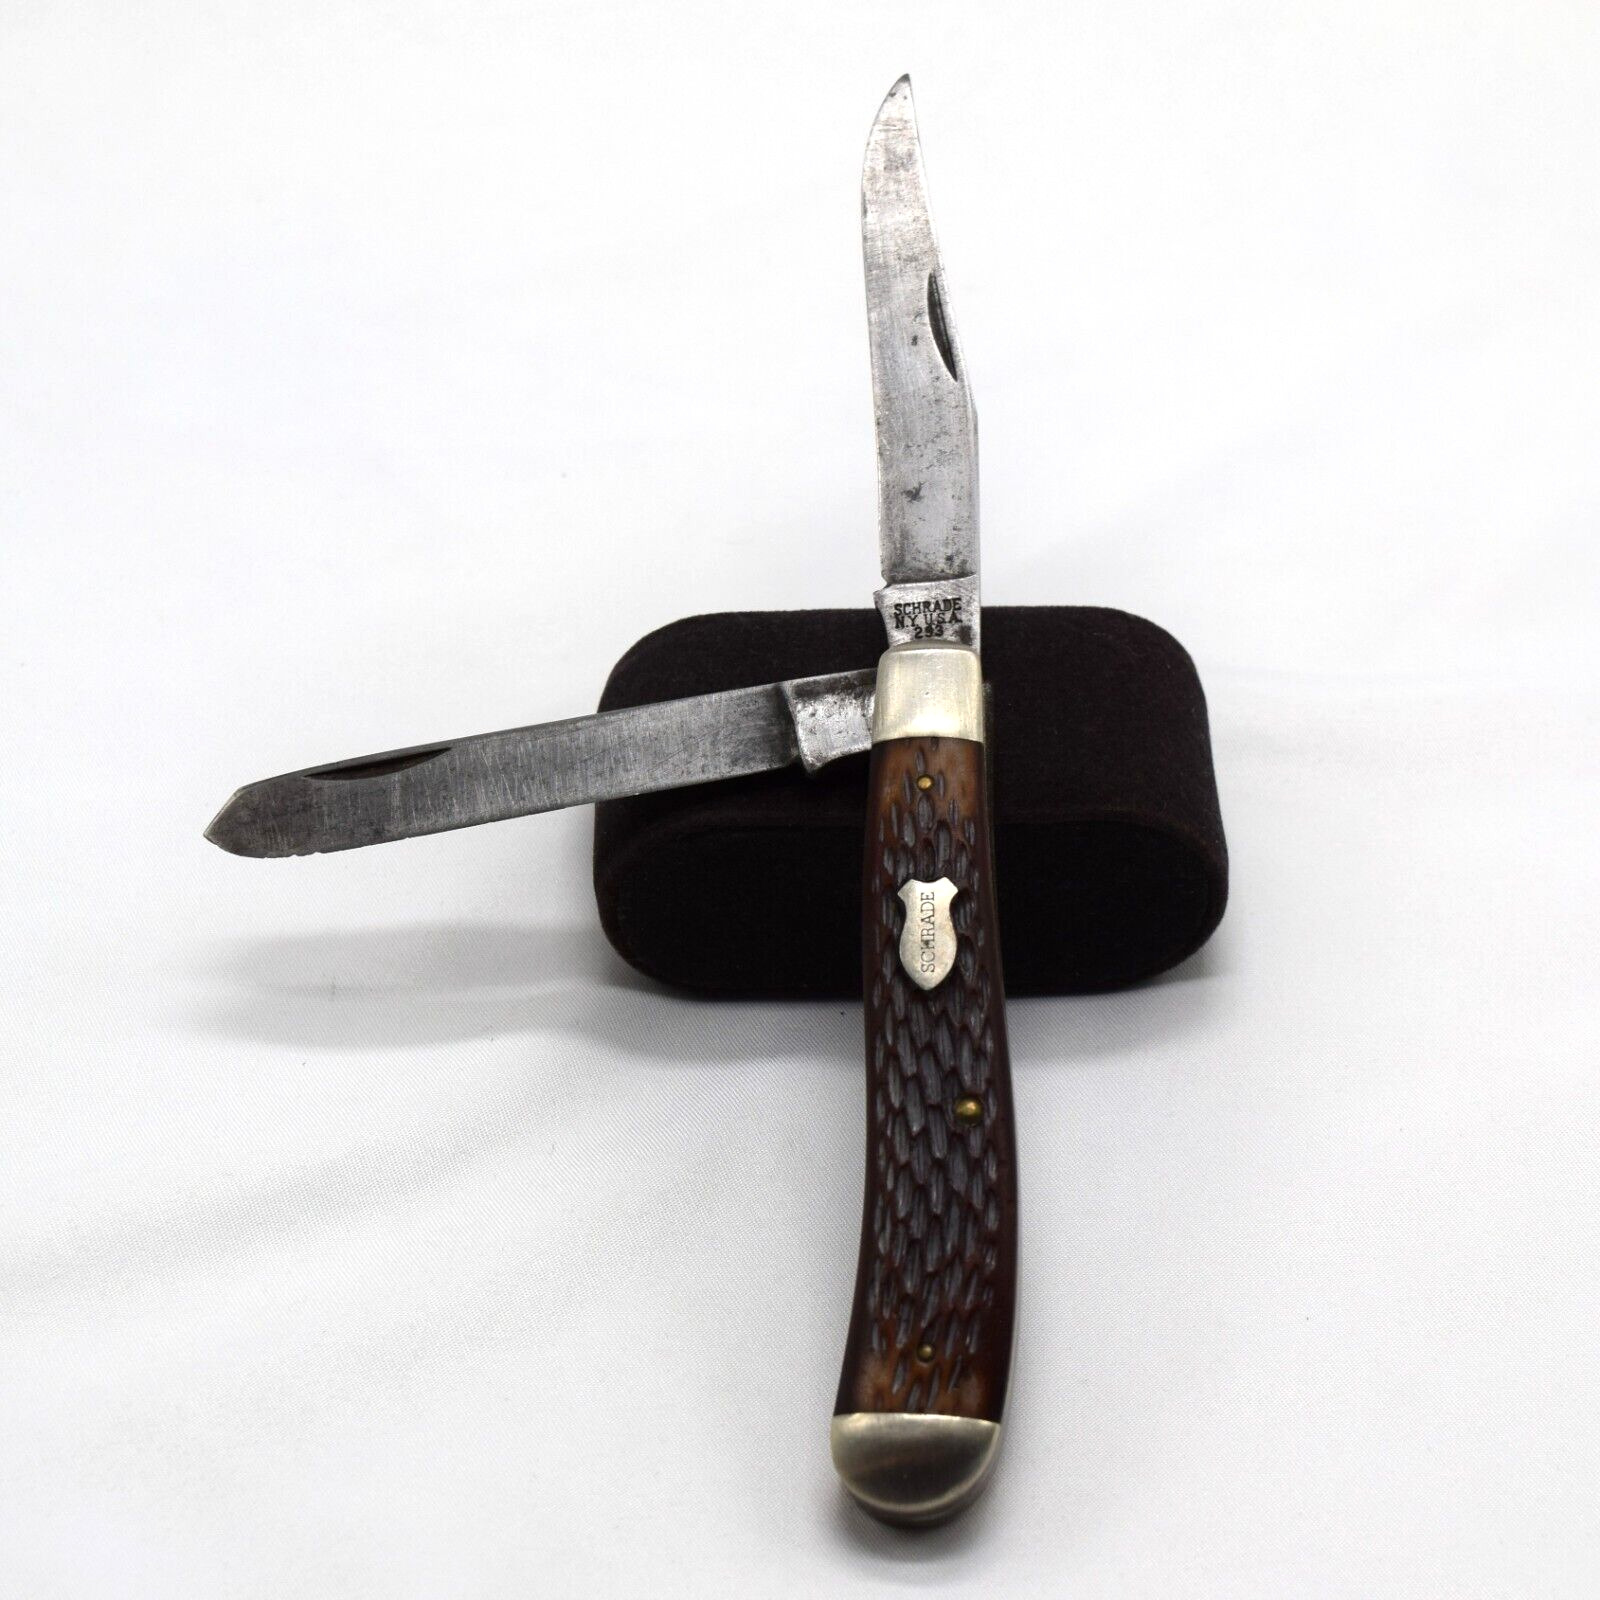 Collectable Vintage Schrade Walden 293 Trapper 2 Blade Delrin Handle Pocketknife